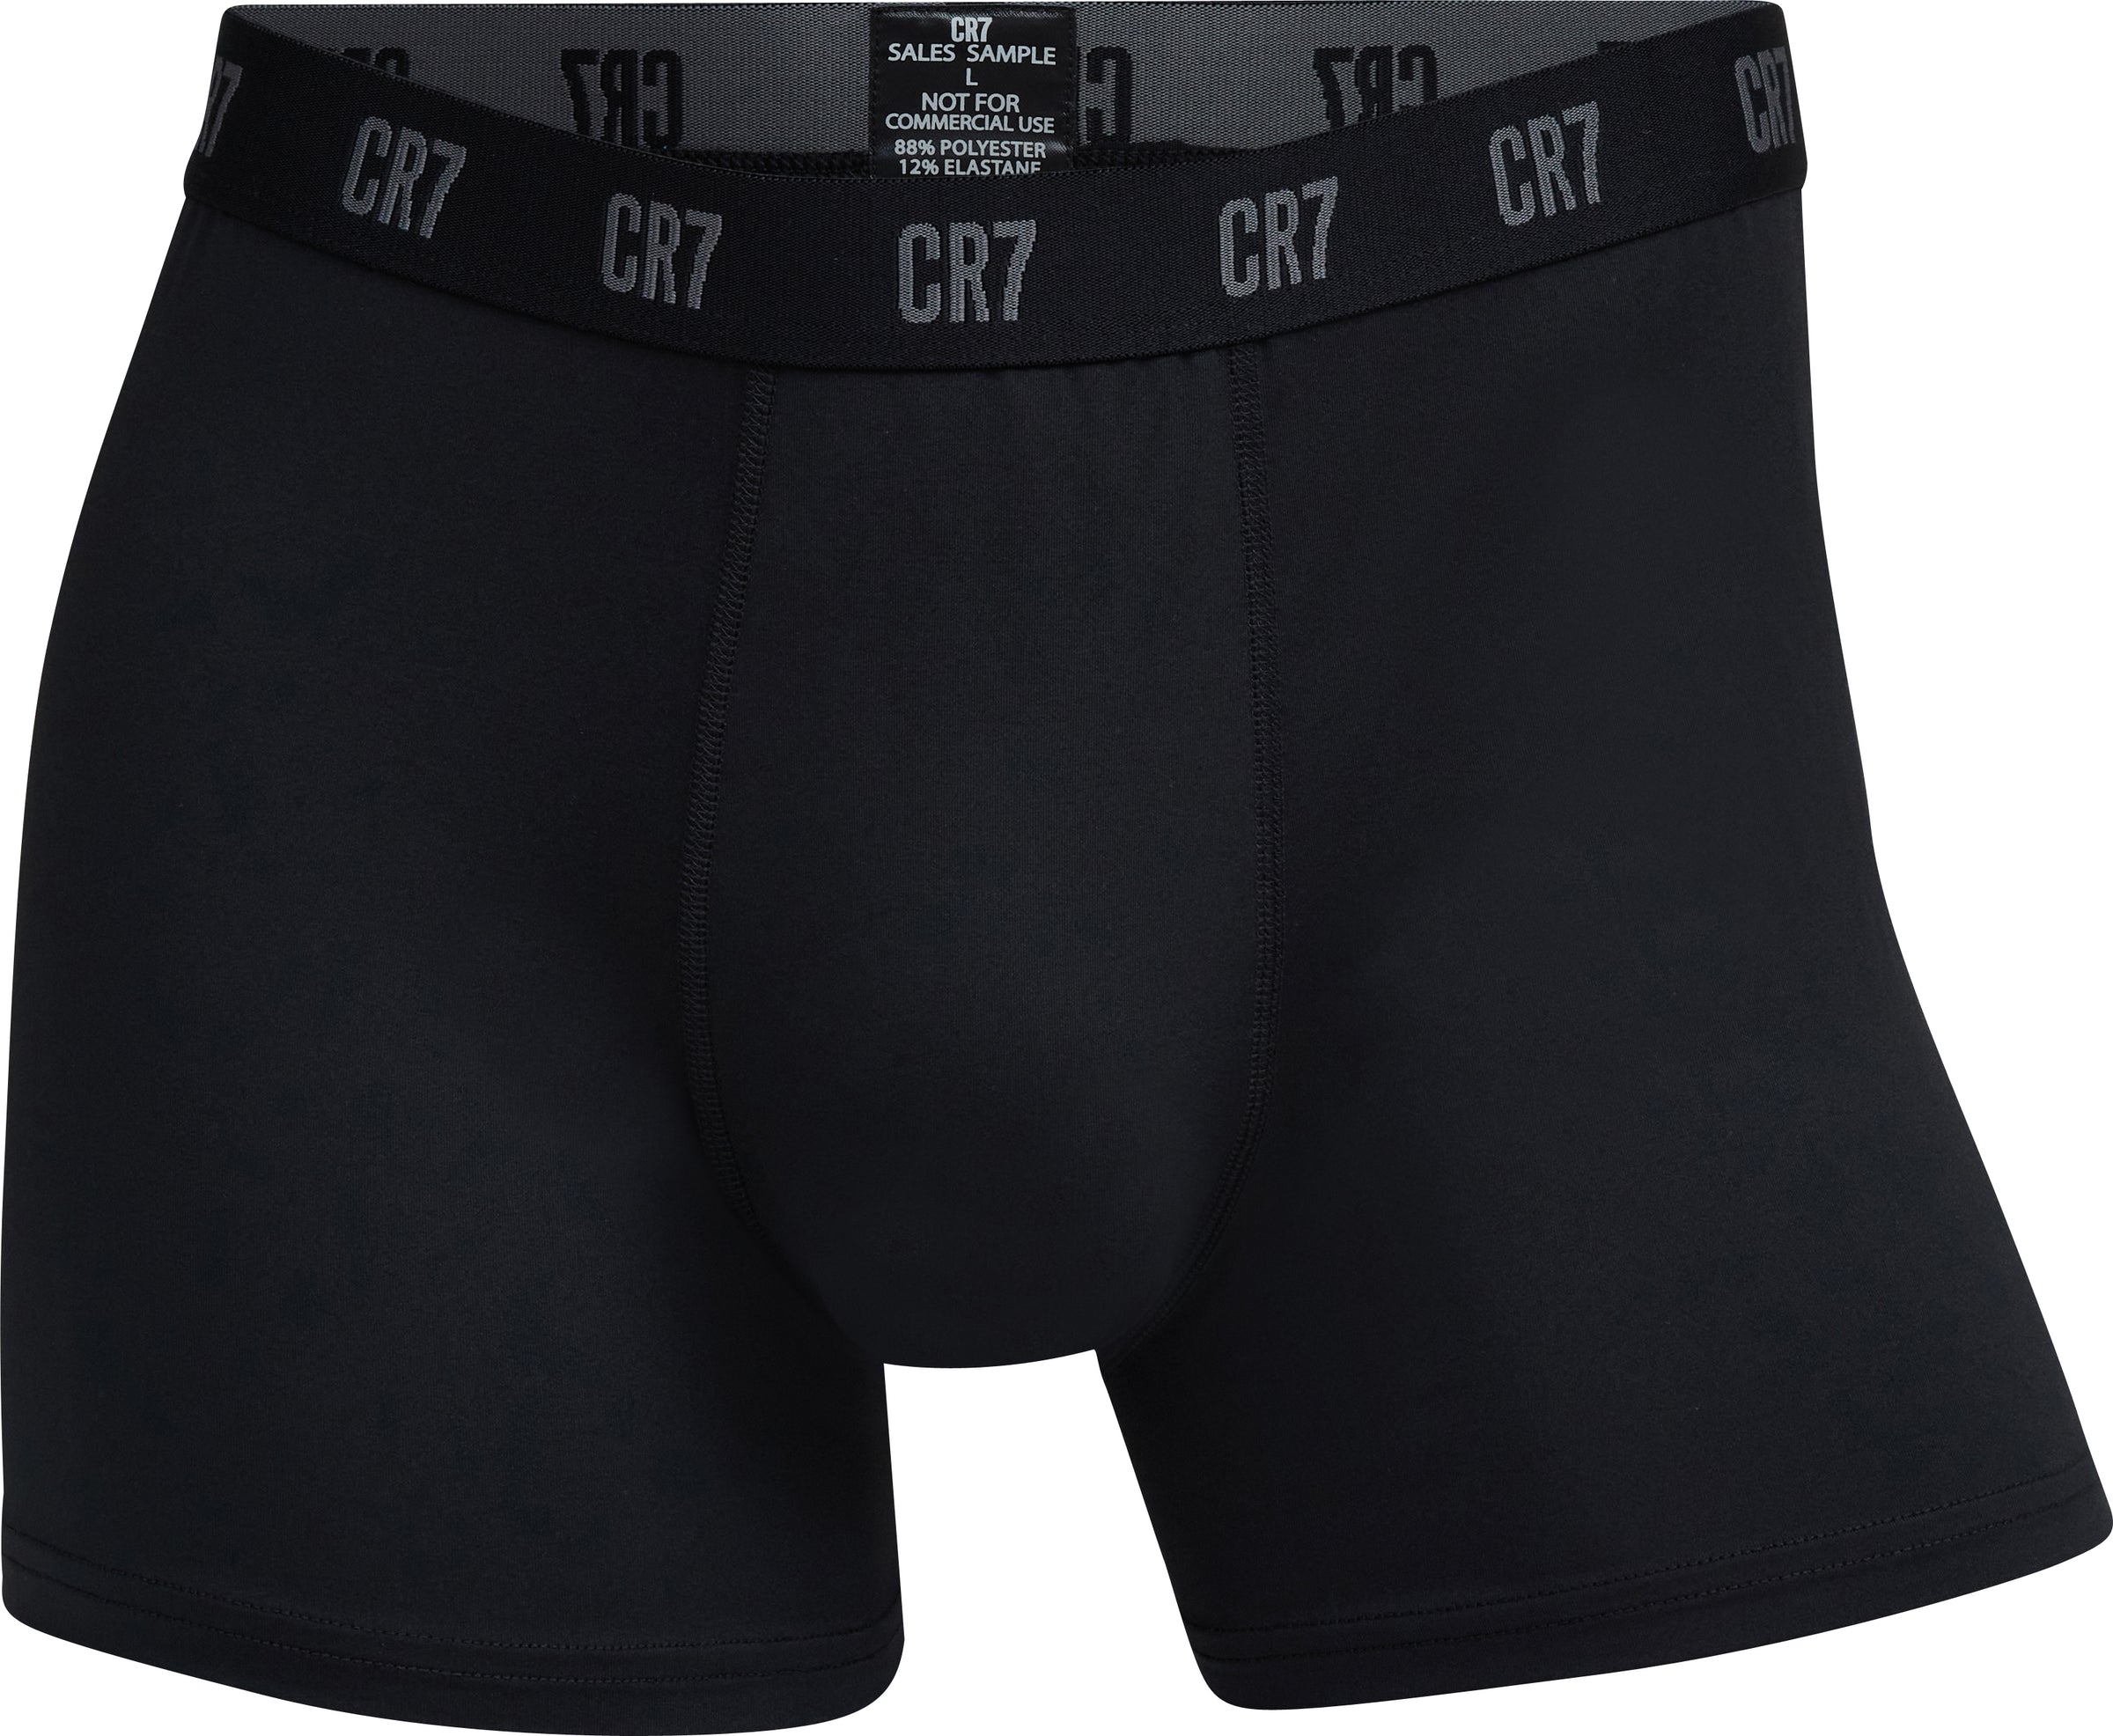 CR7 - Cristiano Ronaldo Regular Panty in Black